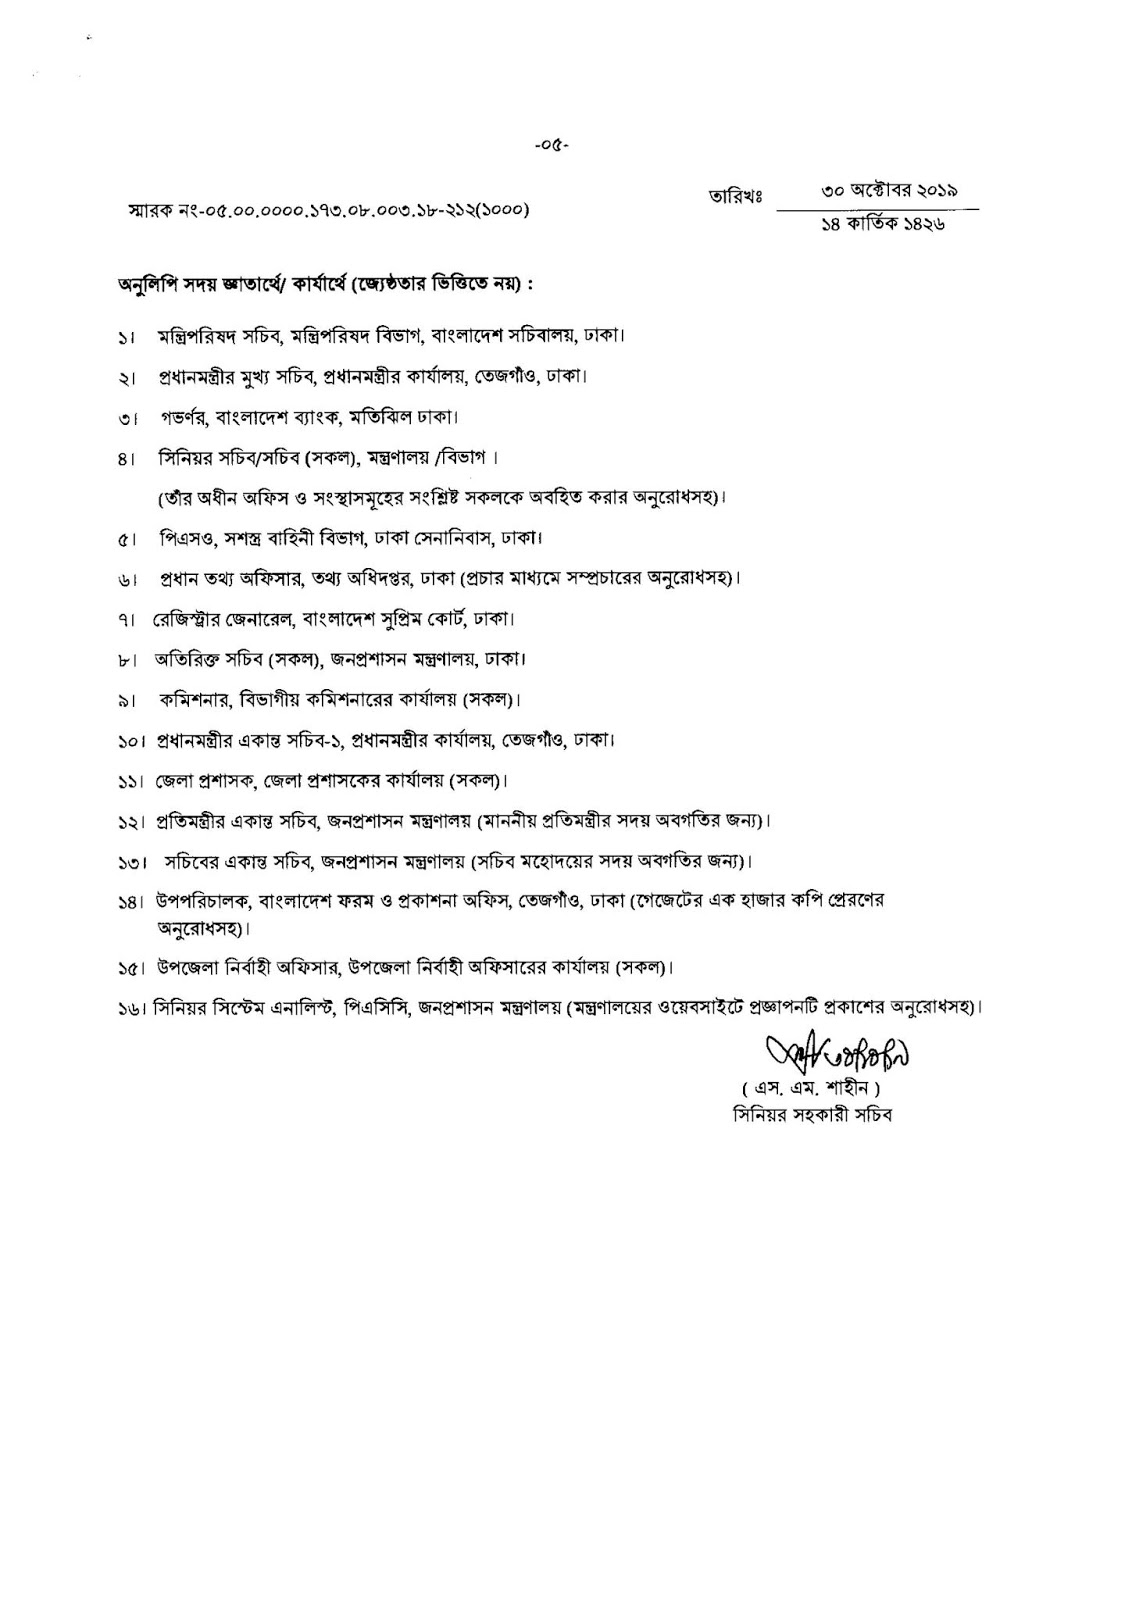 Bangladesh Government Holidays List 2020